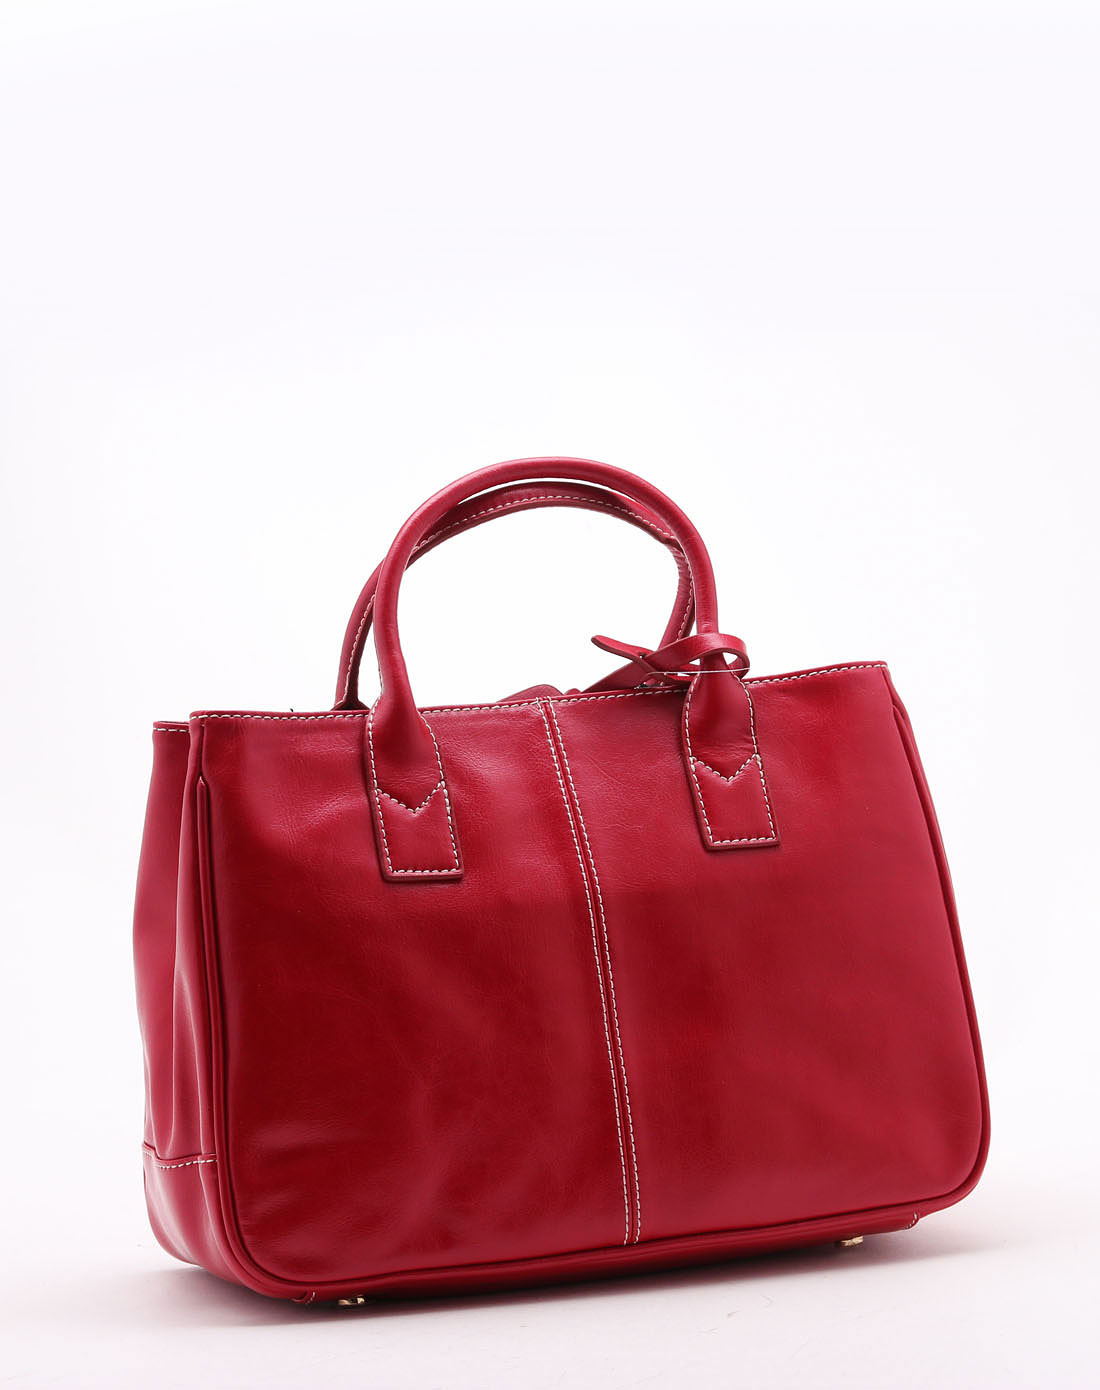 优雅时尚大红色女式手提包